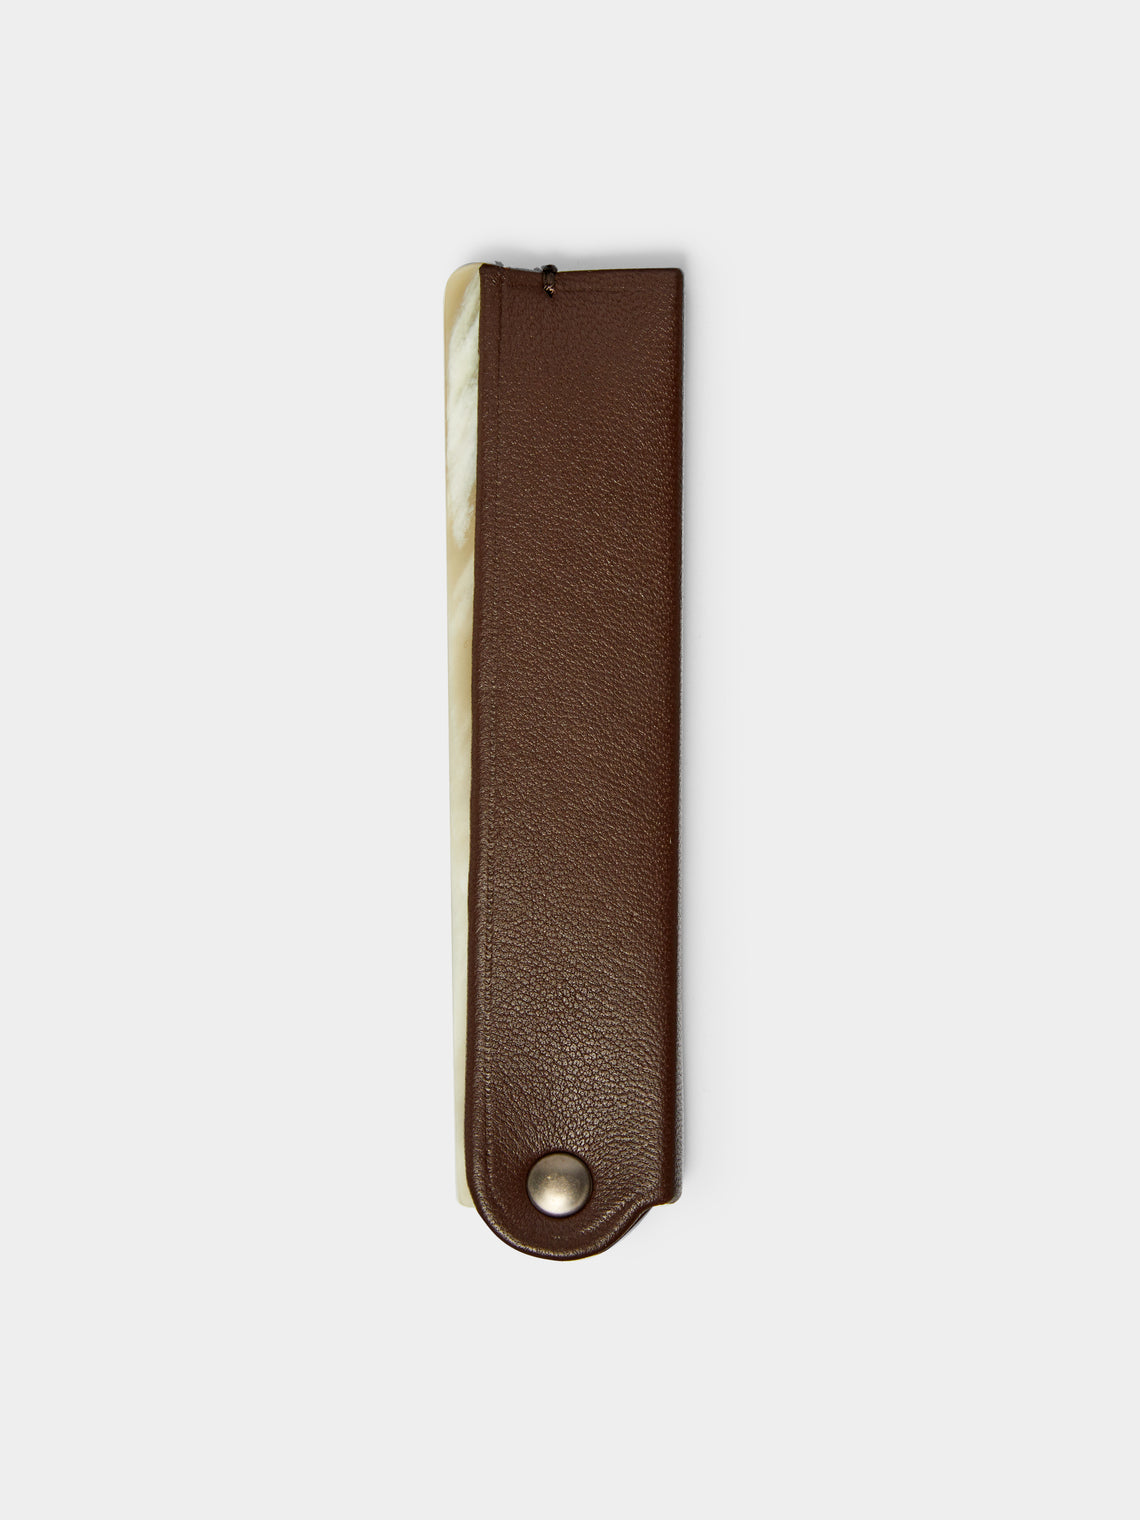 Lorenzi Milano - Leather Folding Pocket Comb -  - ABASK